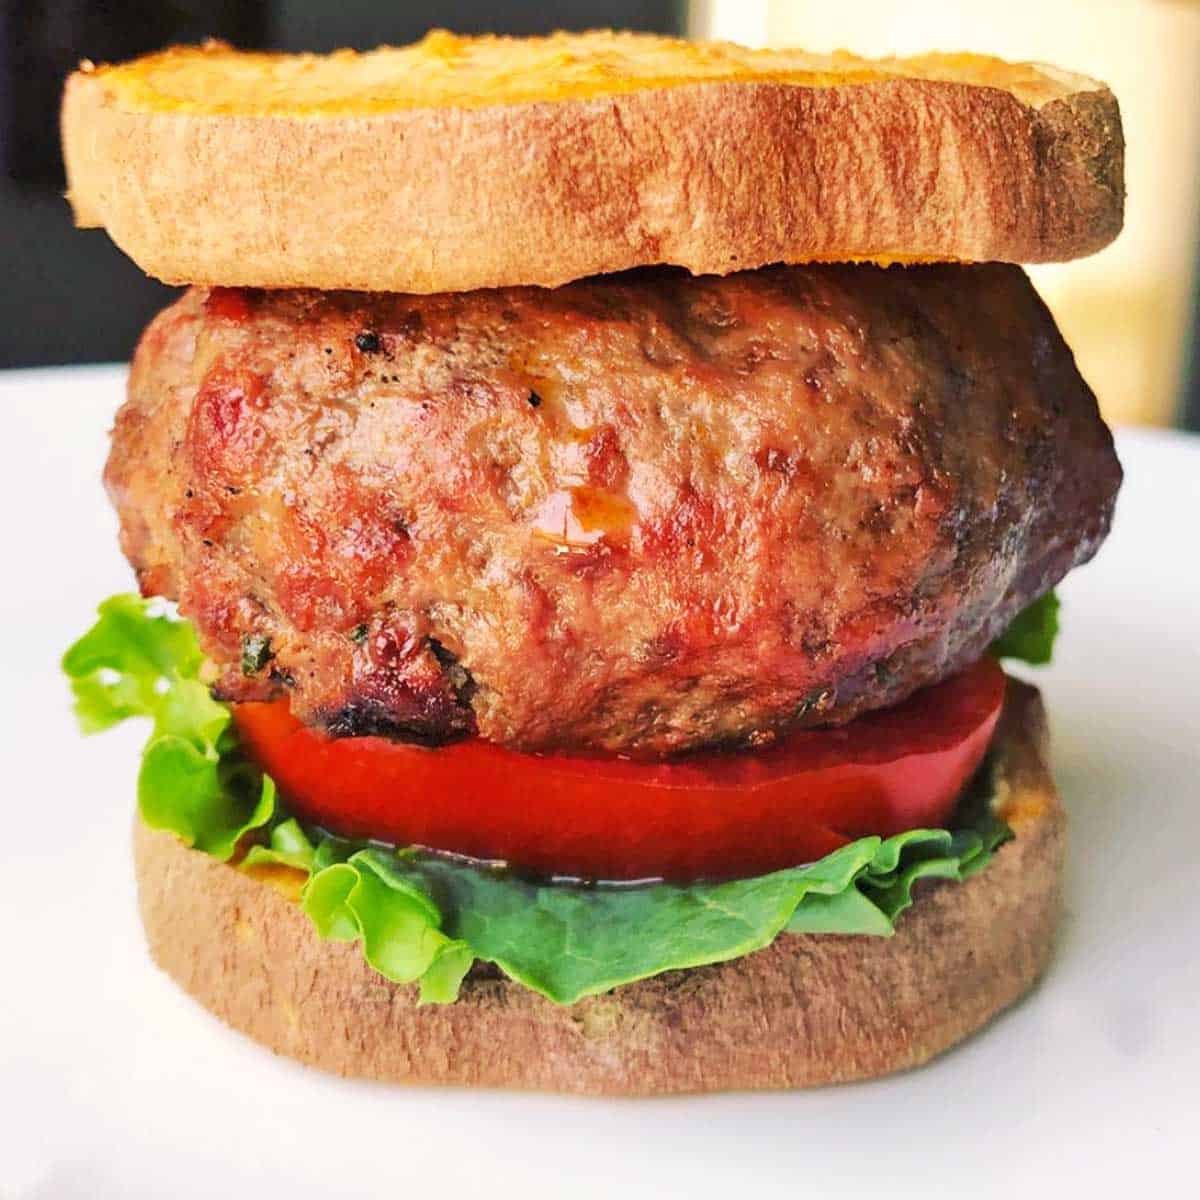 Closeup of a bison burger with a sweet potato bun.